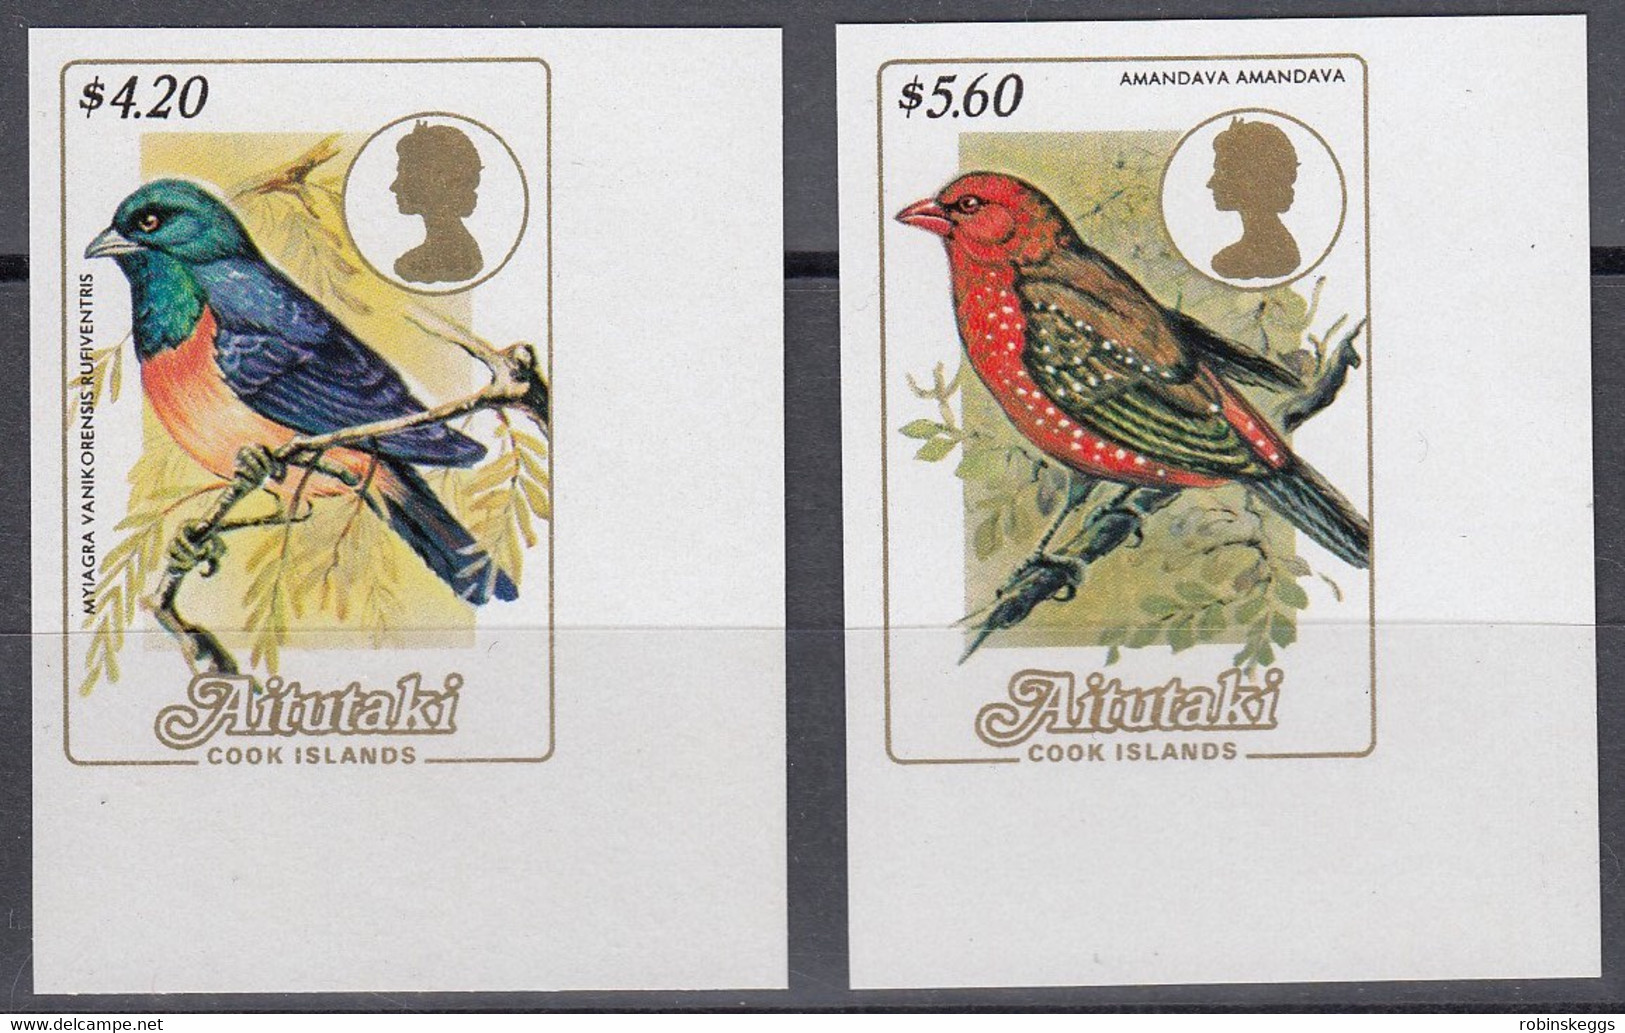 AITUTAKI 1984 Bird Definitives IMPERF Plate Proofs $4.20 & $5.60 - Aitutaki